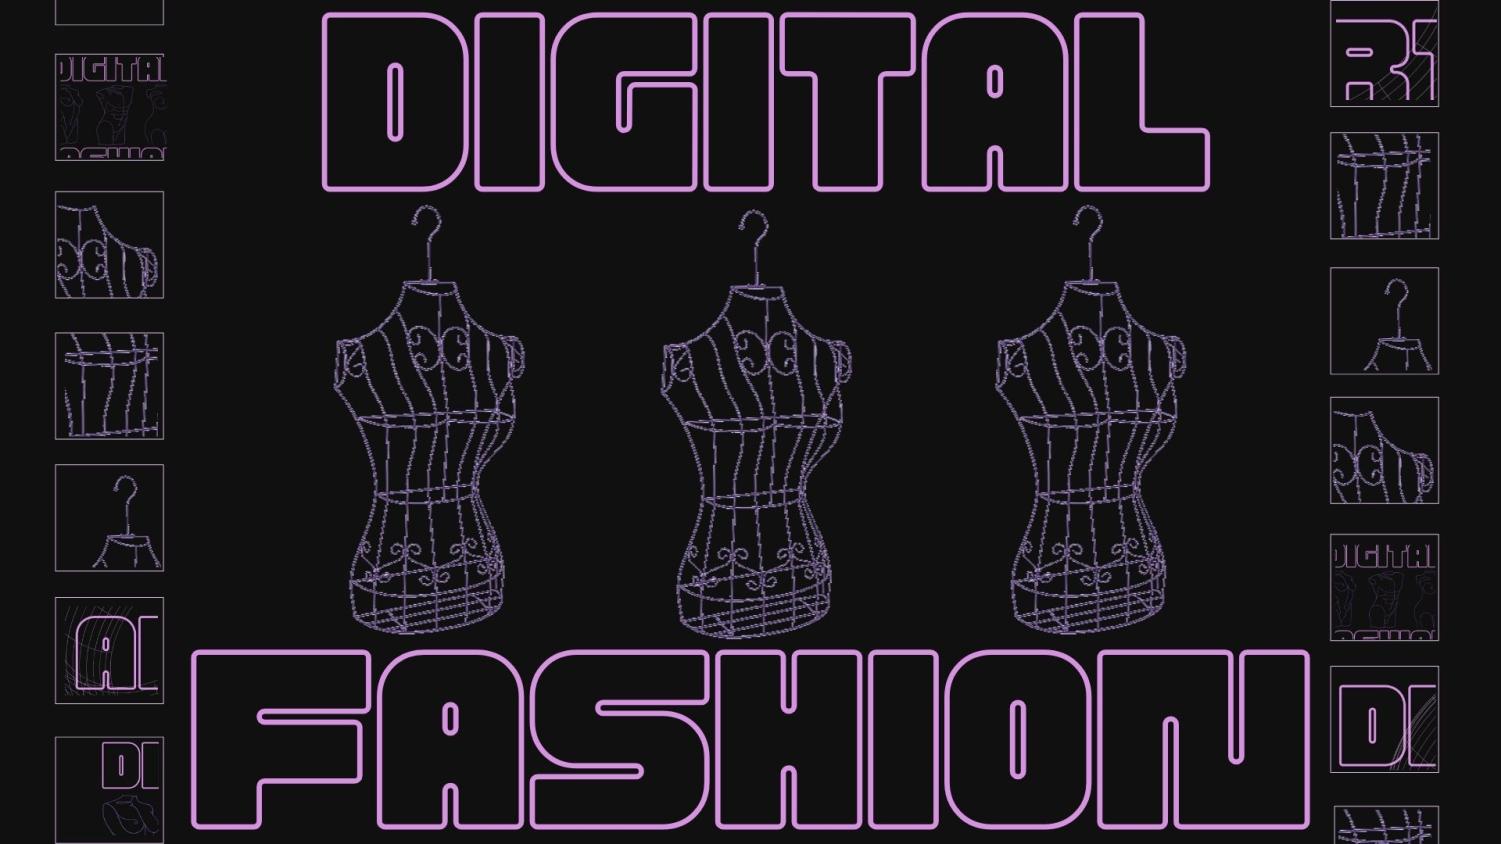 Designing fashion in a digital age